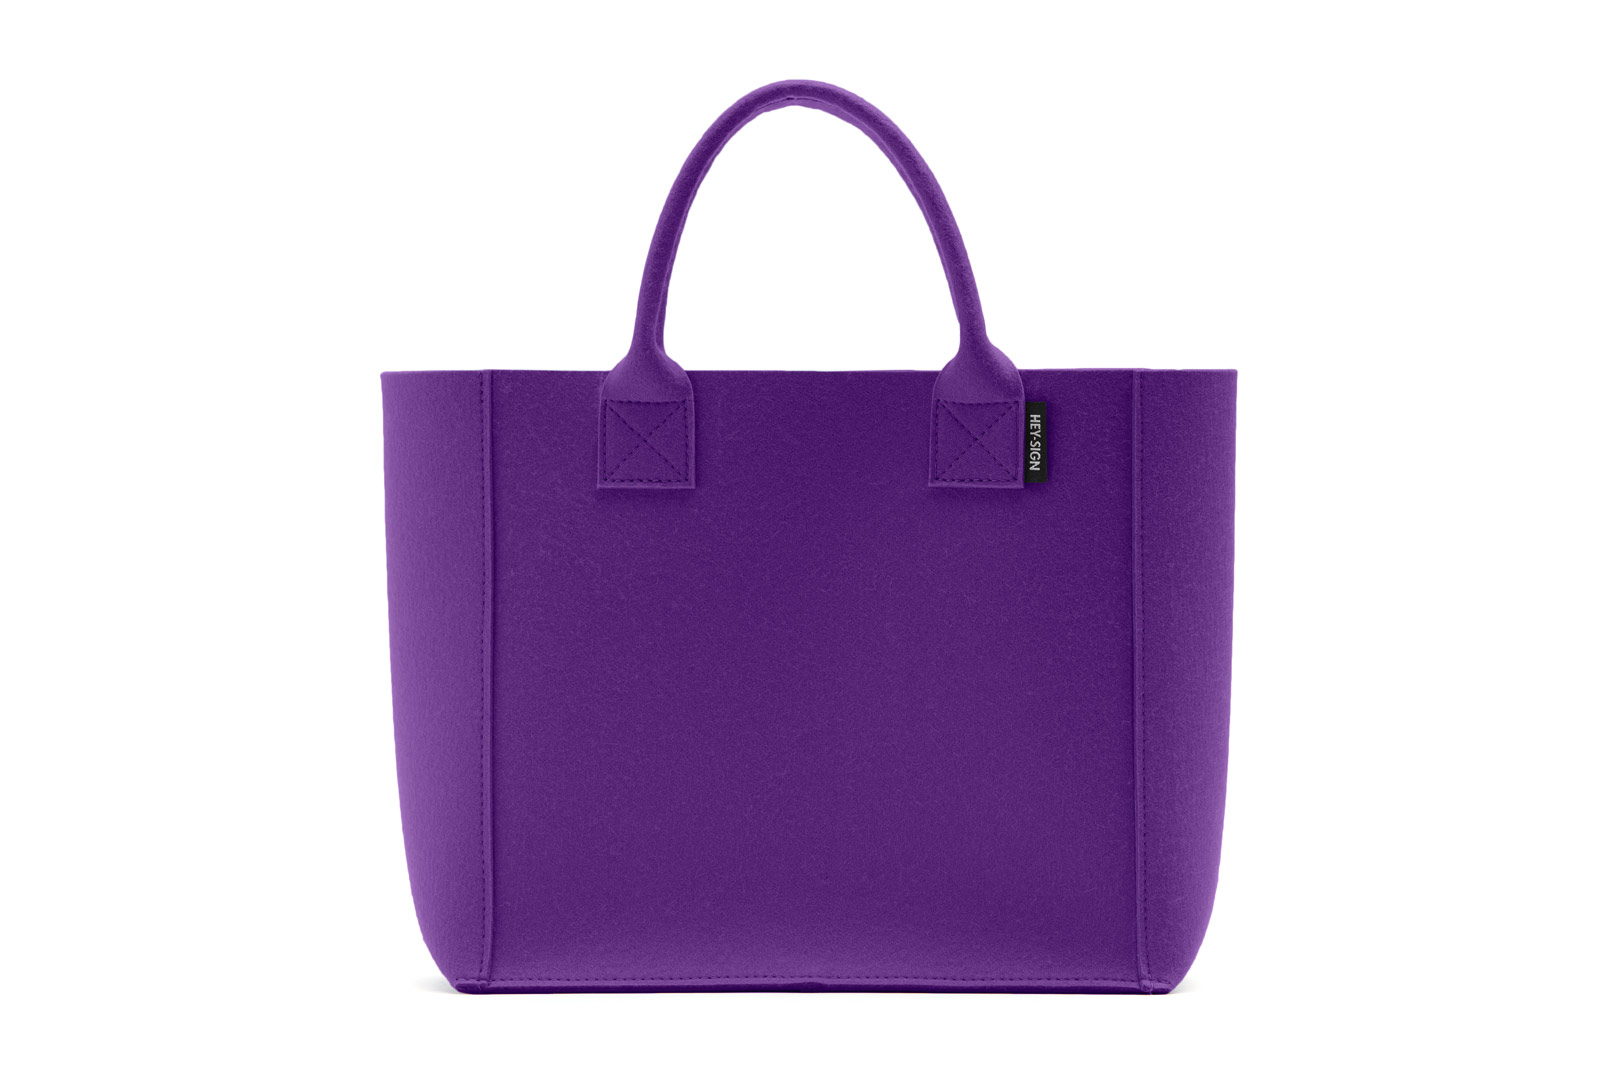 HEY-Sign Tasche Pure in der Farbe "Violett"